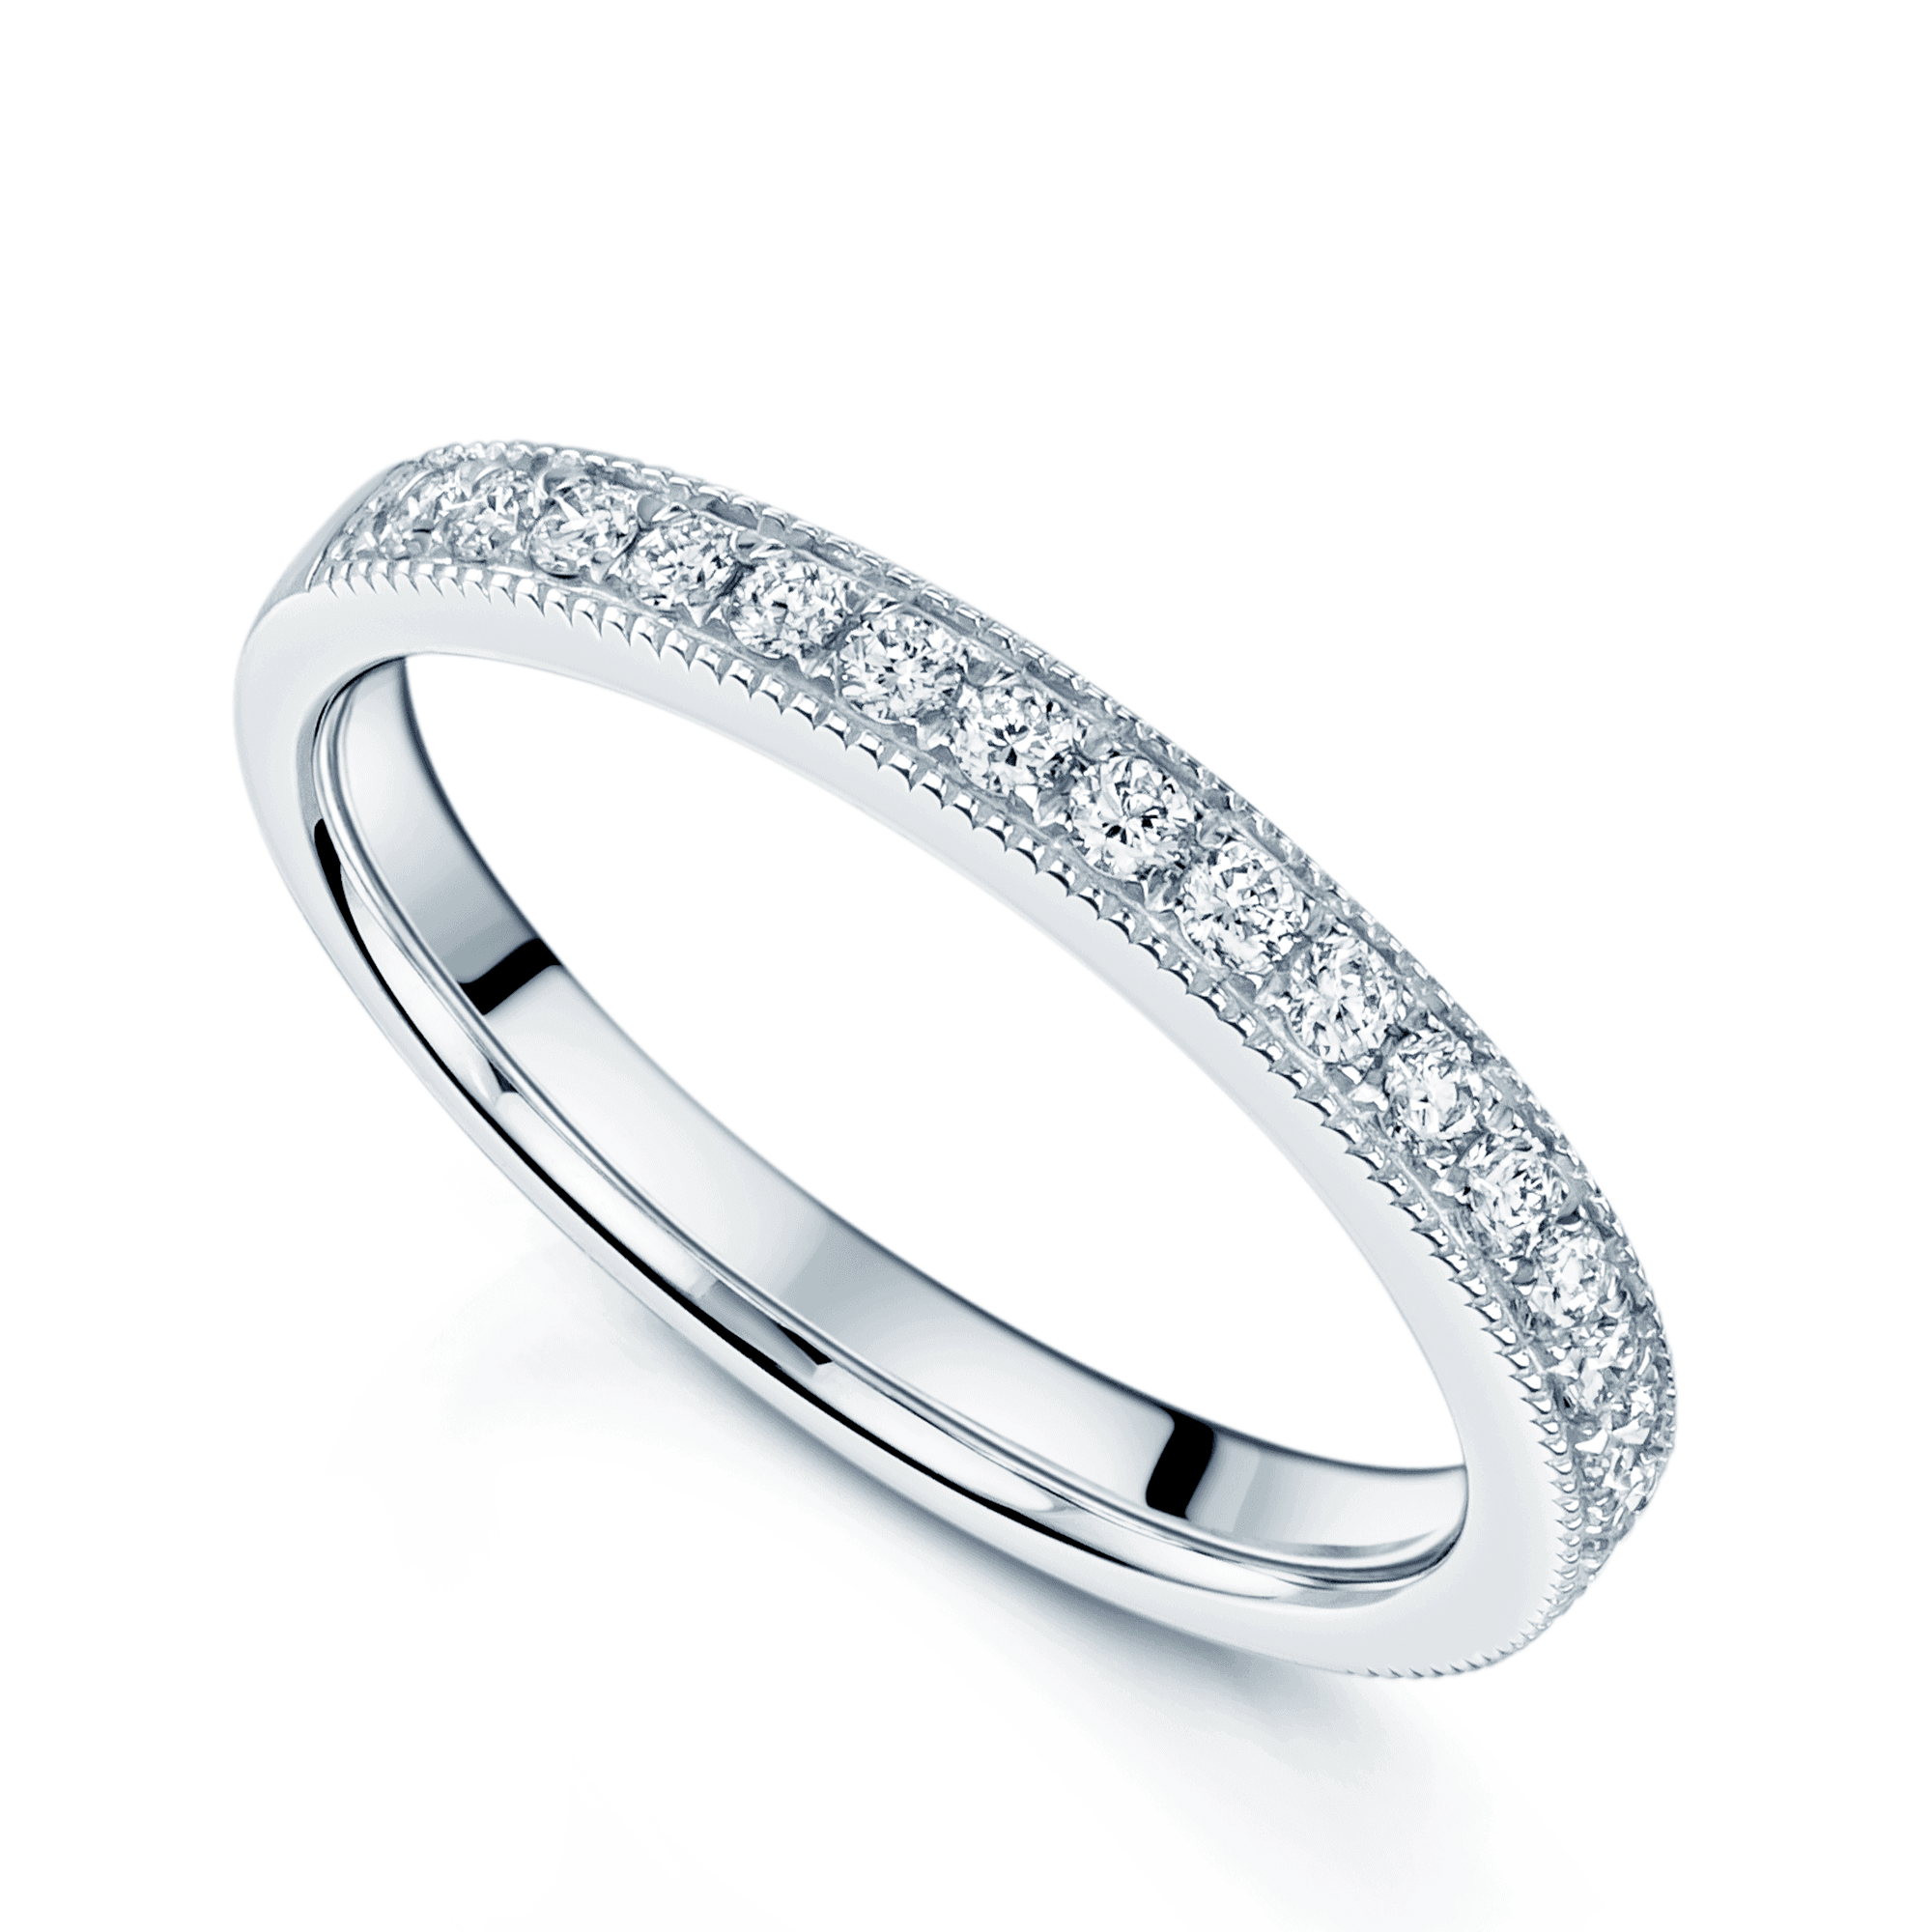 Platinum Round Brilliant Cut Diamond Ring With Milgrain Edge